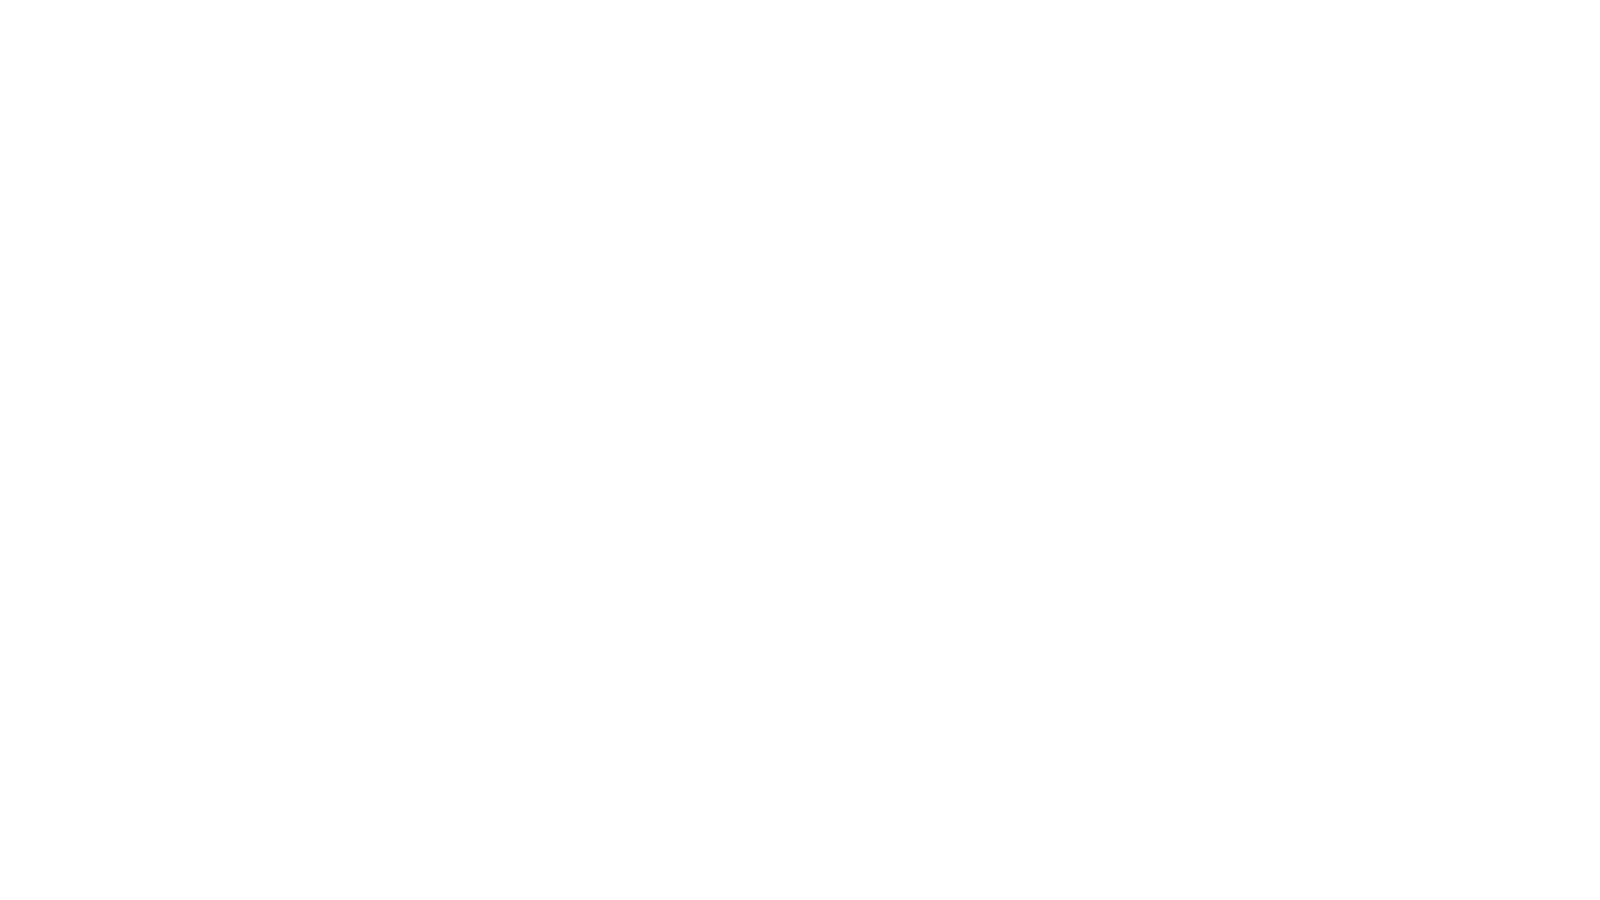 ➡️ Полную версию прогноза на неделю смотрите на канале Astro Woman

➡️ На вебинаре “Летнее Солнцестояние: Работа с Тенью” мы будем разбирать особенности положения Нептуна в натальной карте и его проявлений в жизни, чтобы избежать его иллюзий и ошибок.  

➡️ Вебинар состоится 20 июня в 20:00 мск, когда контакт с энергиями Нептуна будет особенно сильный, а кардинальный характер Летнего Солнцестояния сможет переломить привычную модель поведения. 

Успейте зарегистрироваться!

Пишите как ваши дела? Что у вас происходит?

Ваша Марина Вергелес